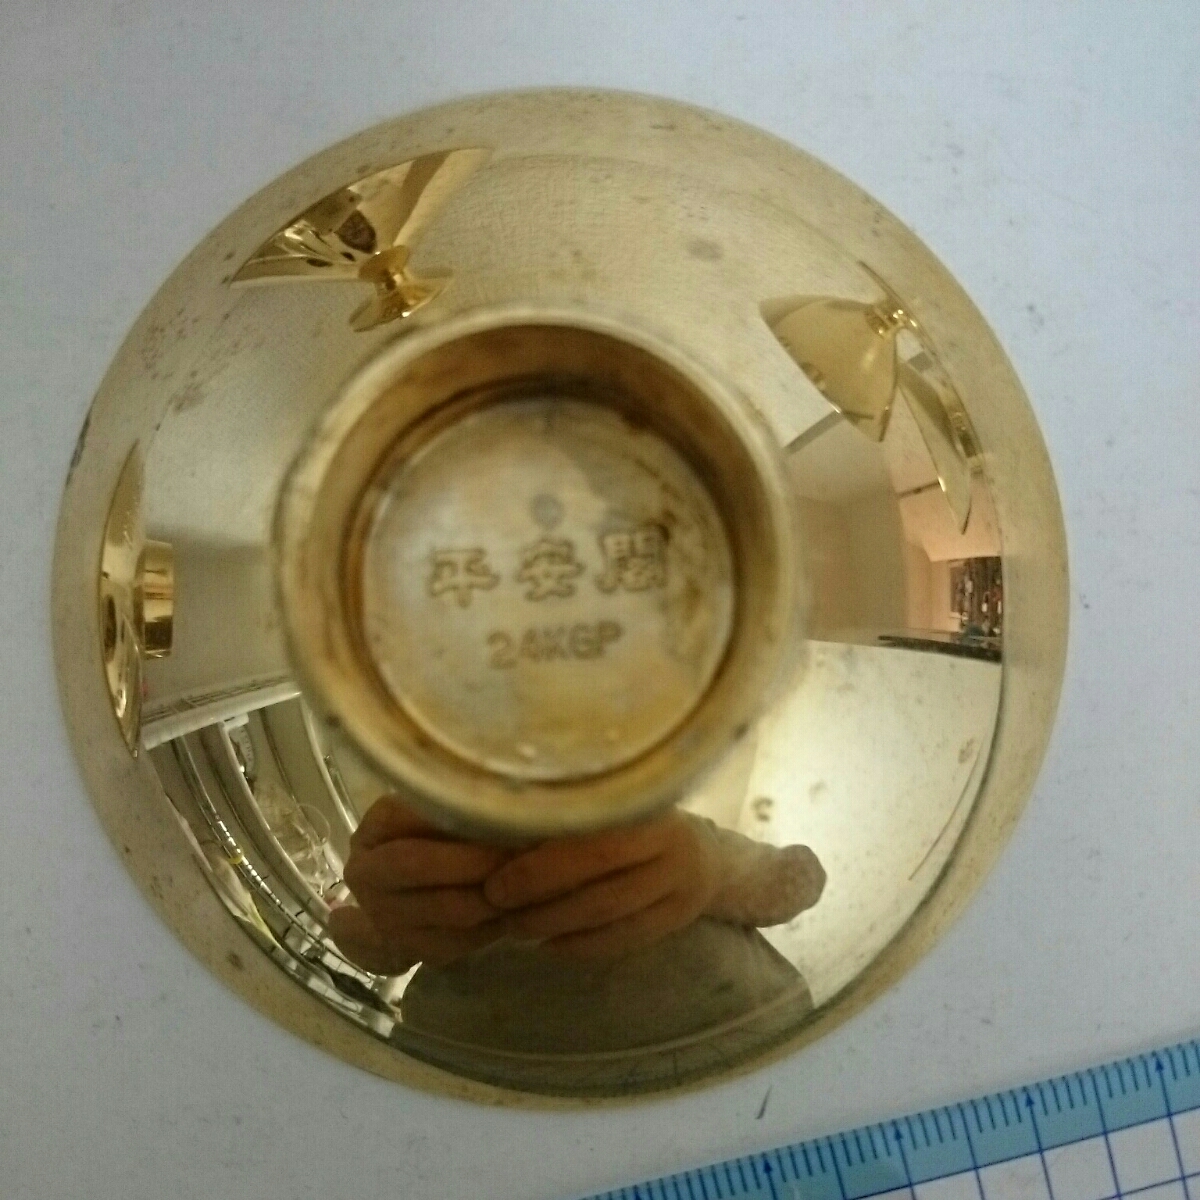  原文:＊⑦金杯 金メッキ24KGPです。松山郵便貯金会館記念品。平安閣記念品など。中古扱いです。